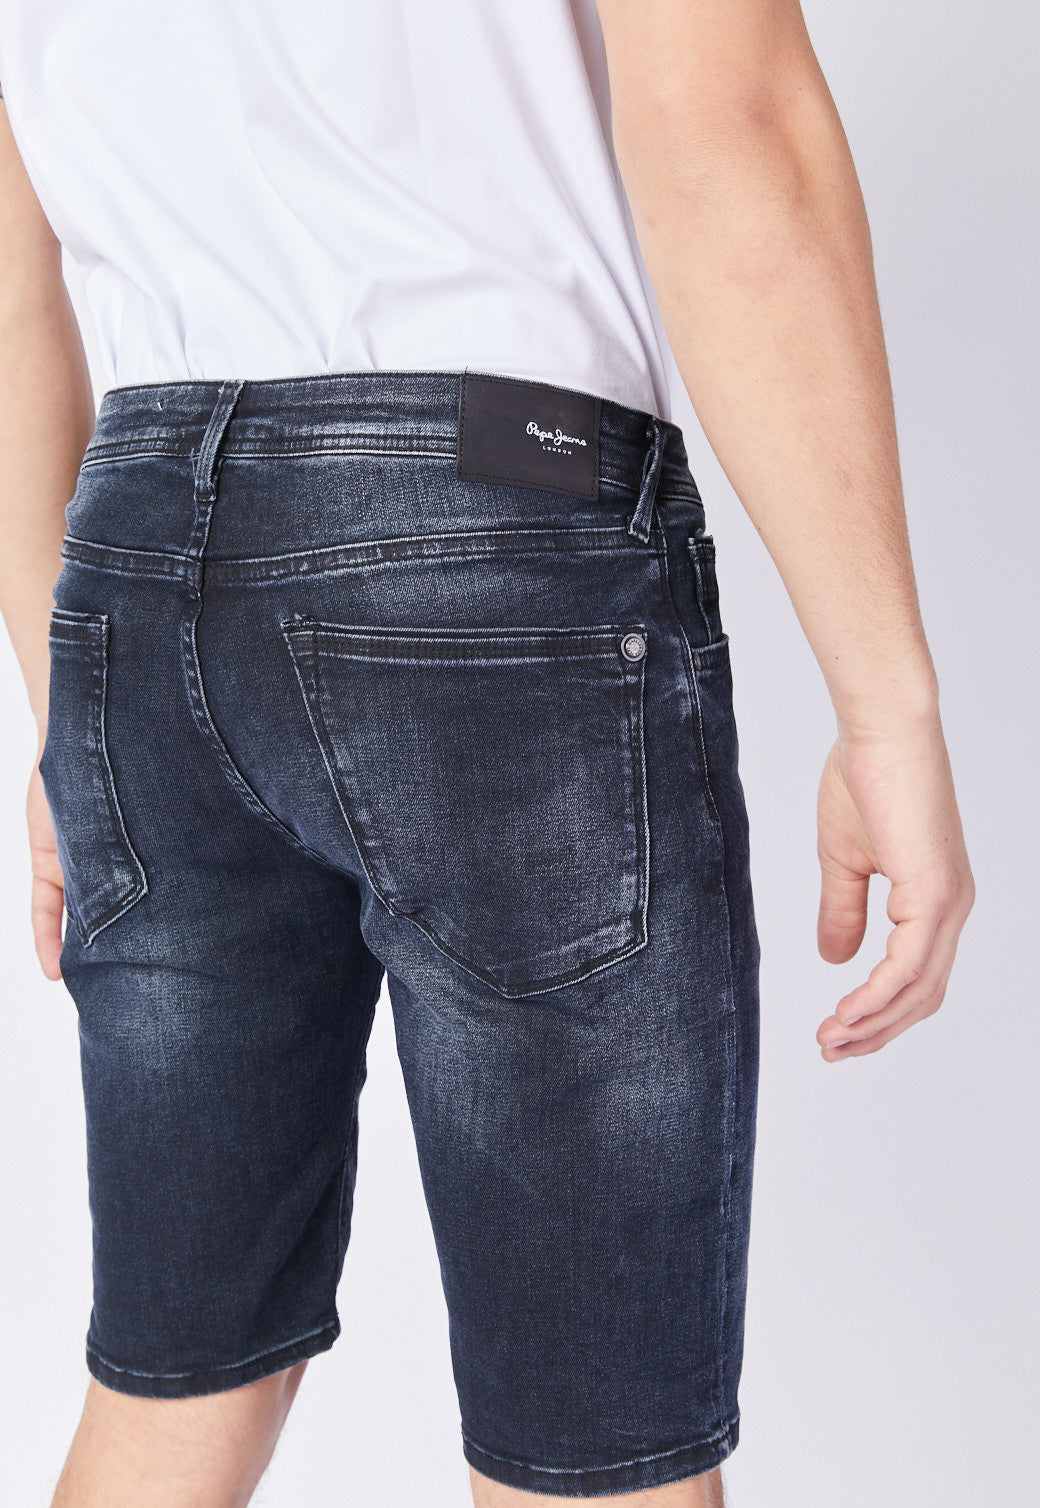 ג'ינס ברמודה לגברים